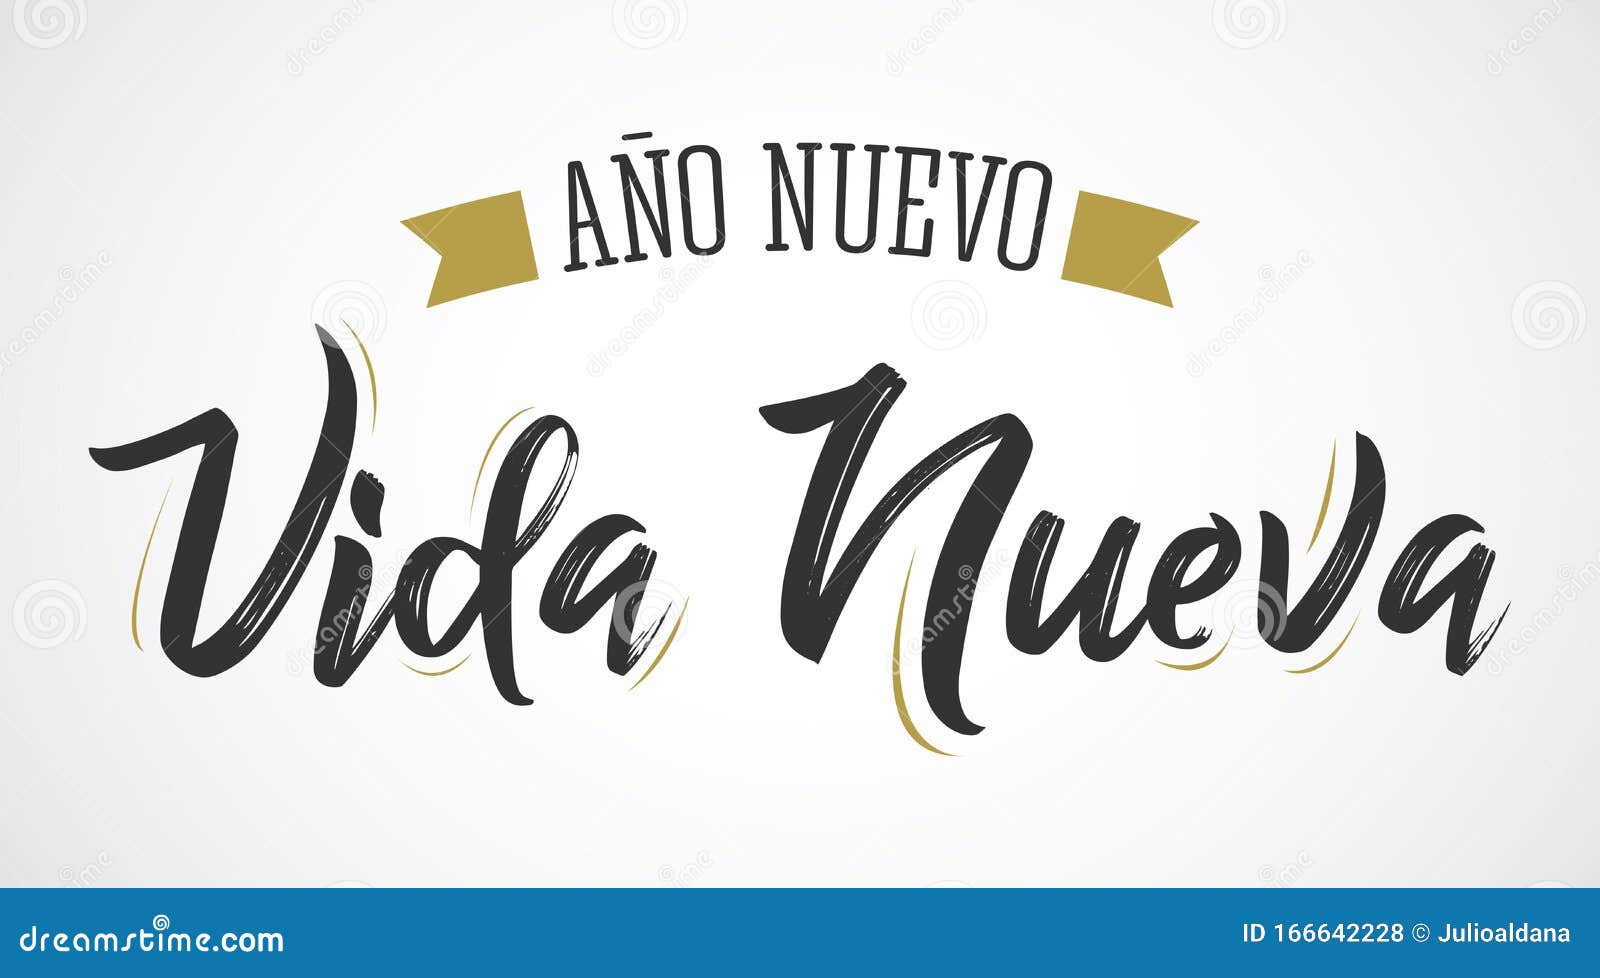 ano nuevo vida nueva, new year new life spanish text  .